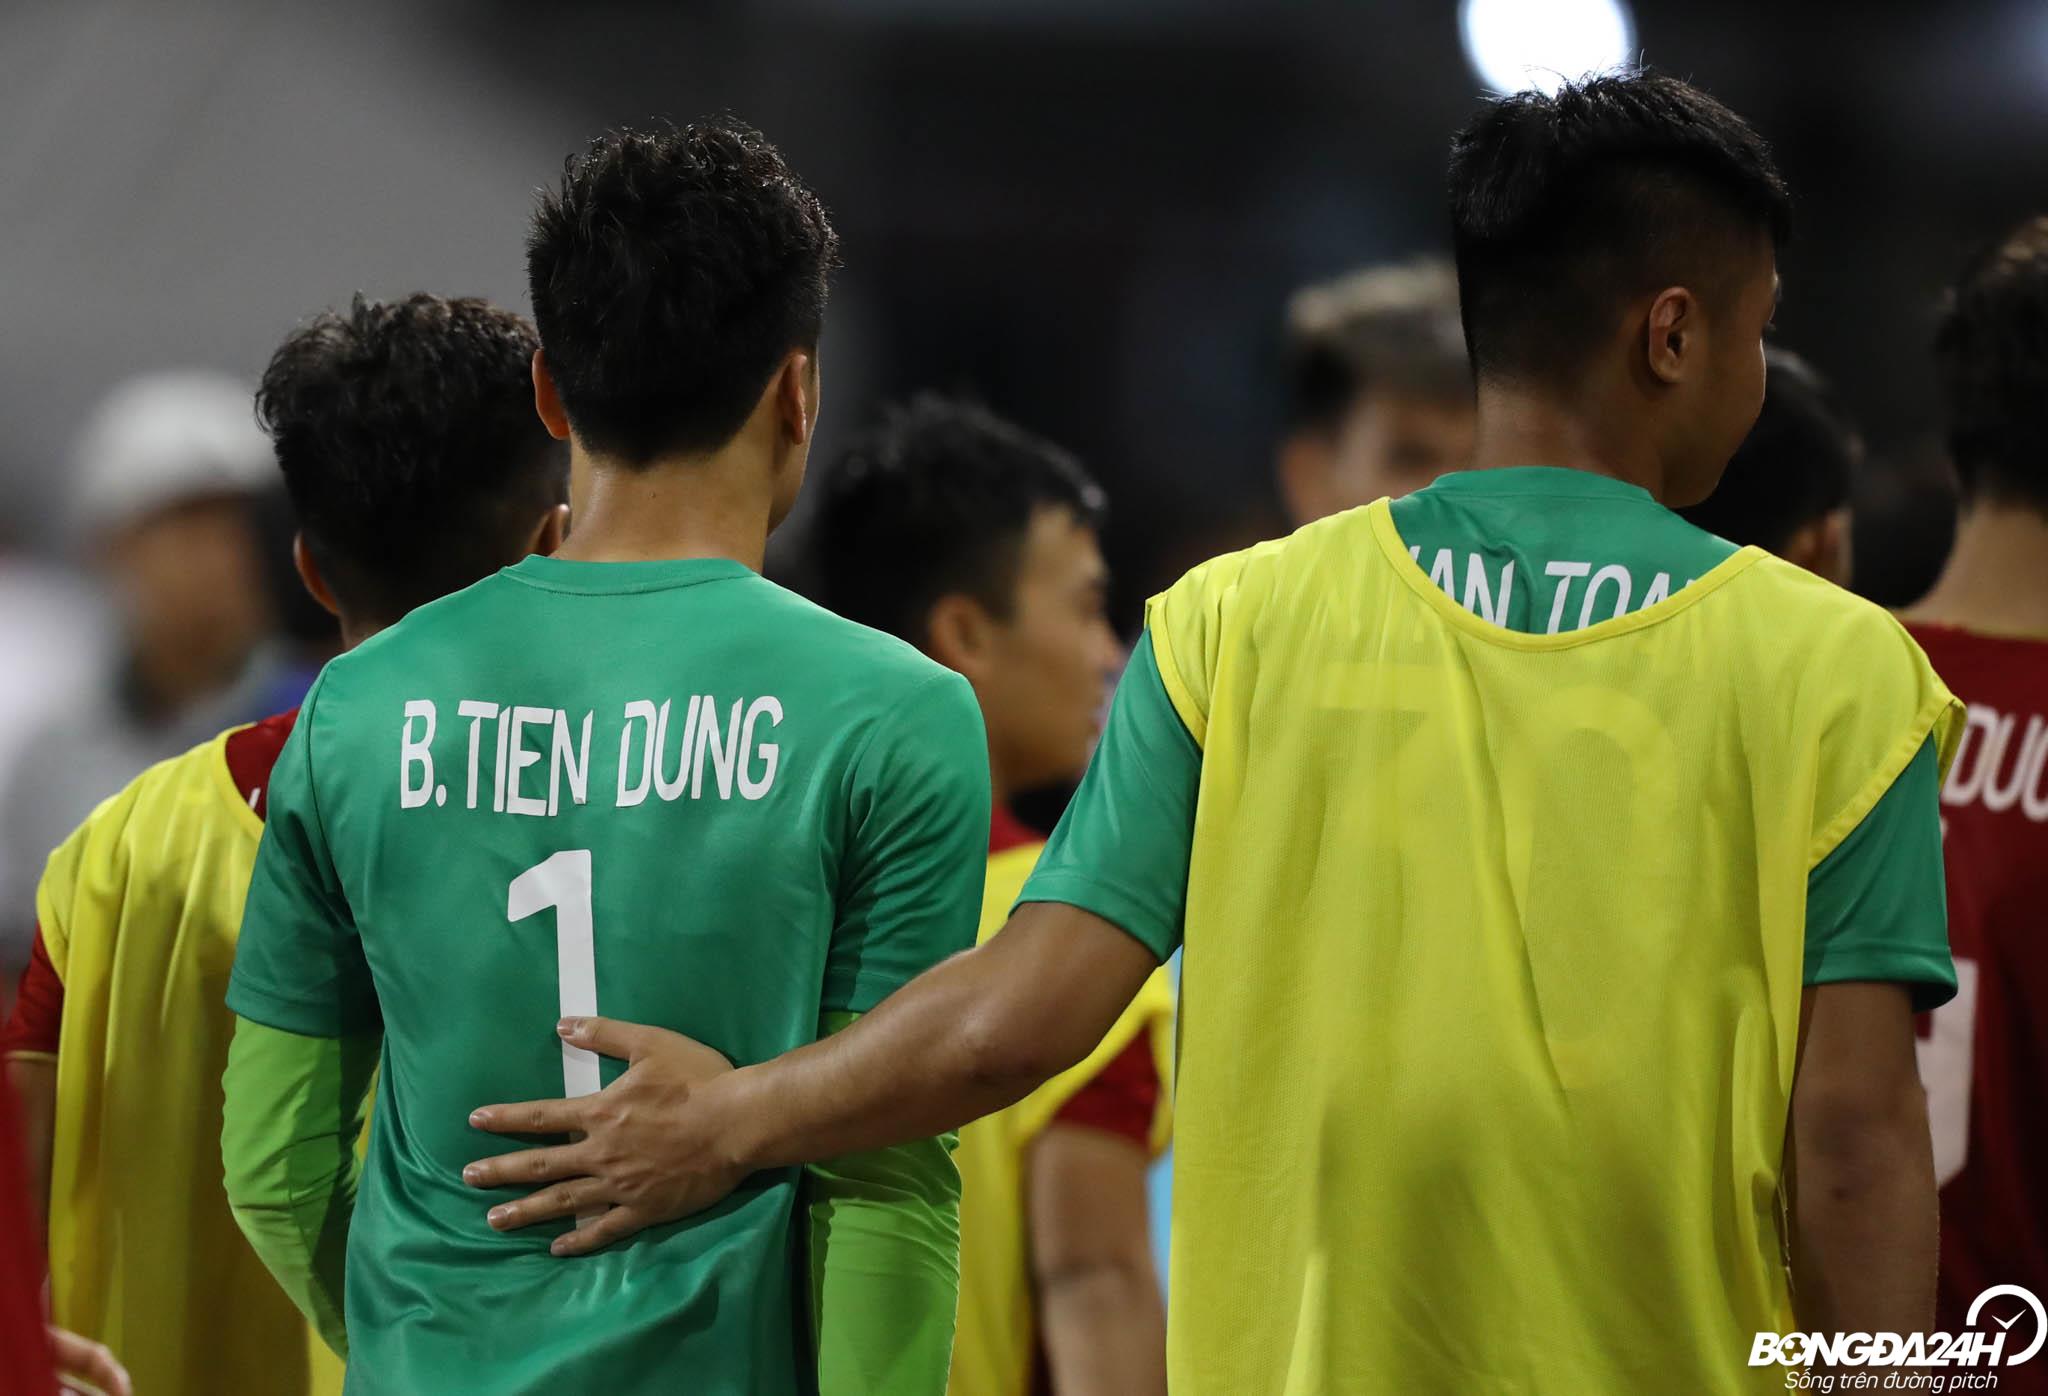 U23 Việt Nam Thủ môn Bùi Tiến Dũng bị đau vai sau trận gặp UAE hình ảnh